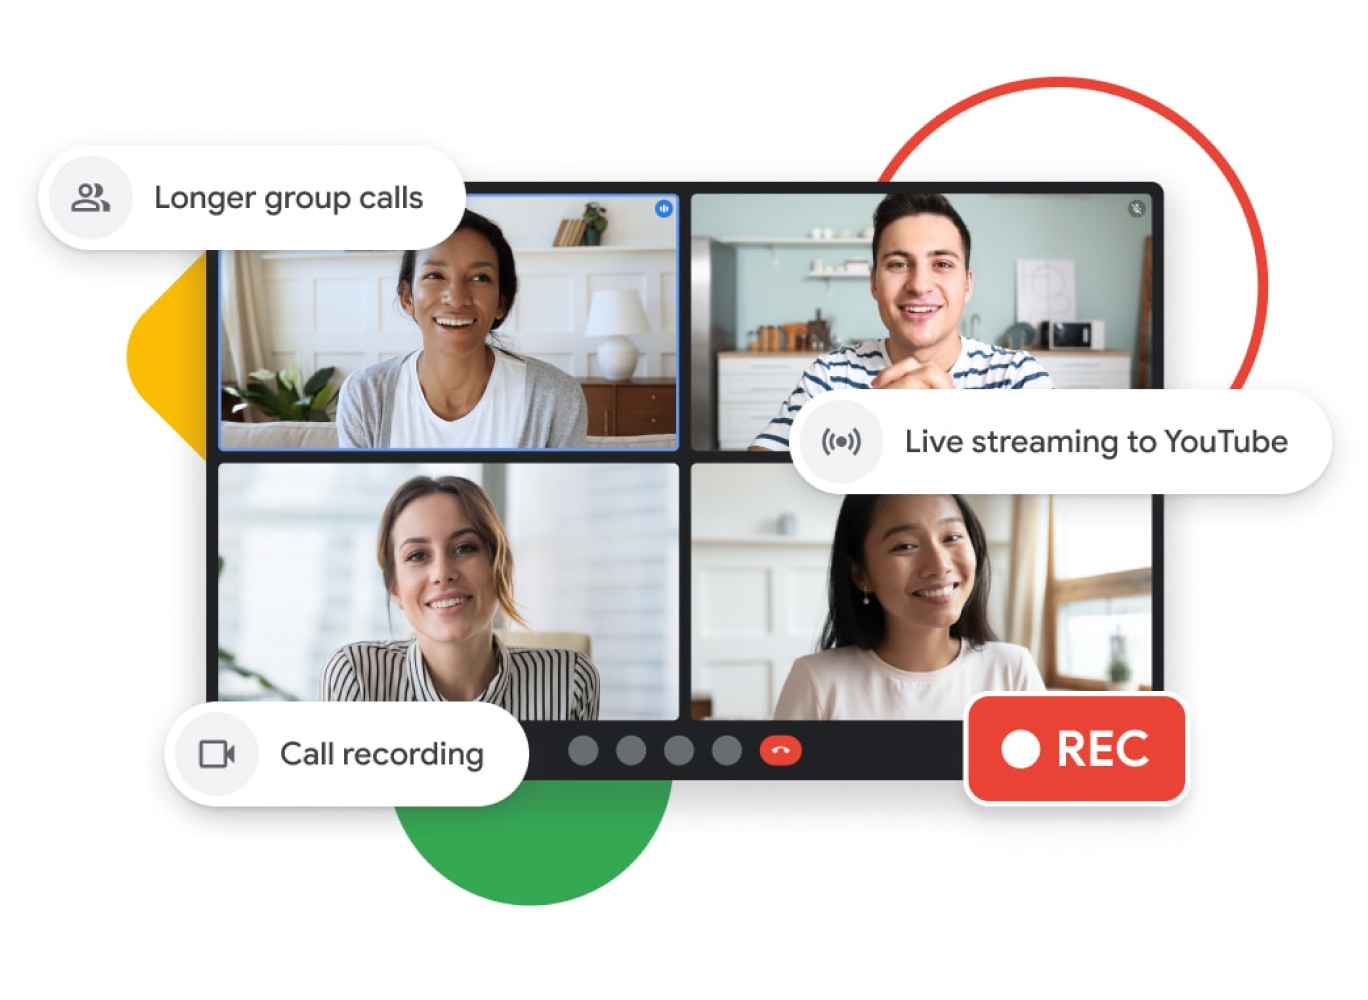 Grafisk illustration av ett Google Meet-samtal med längre gruppsamtal, livestreaming till YouTube och funktioner för inspelning av samtal.